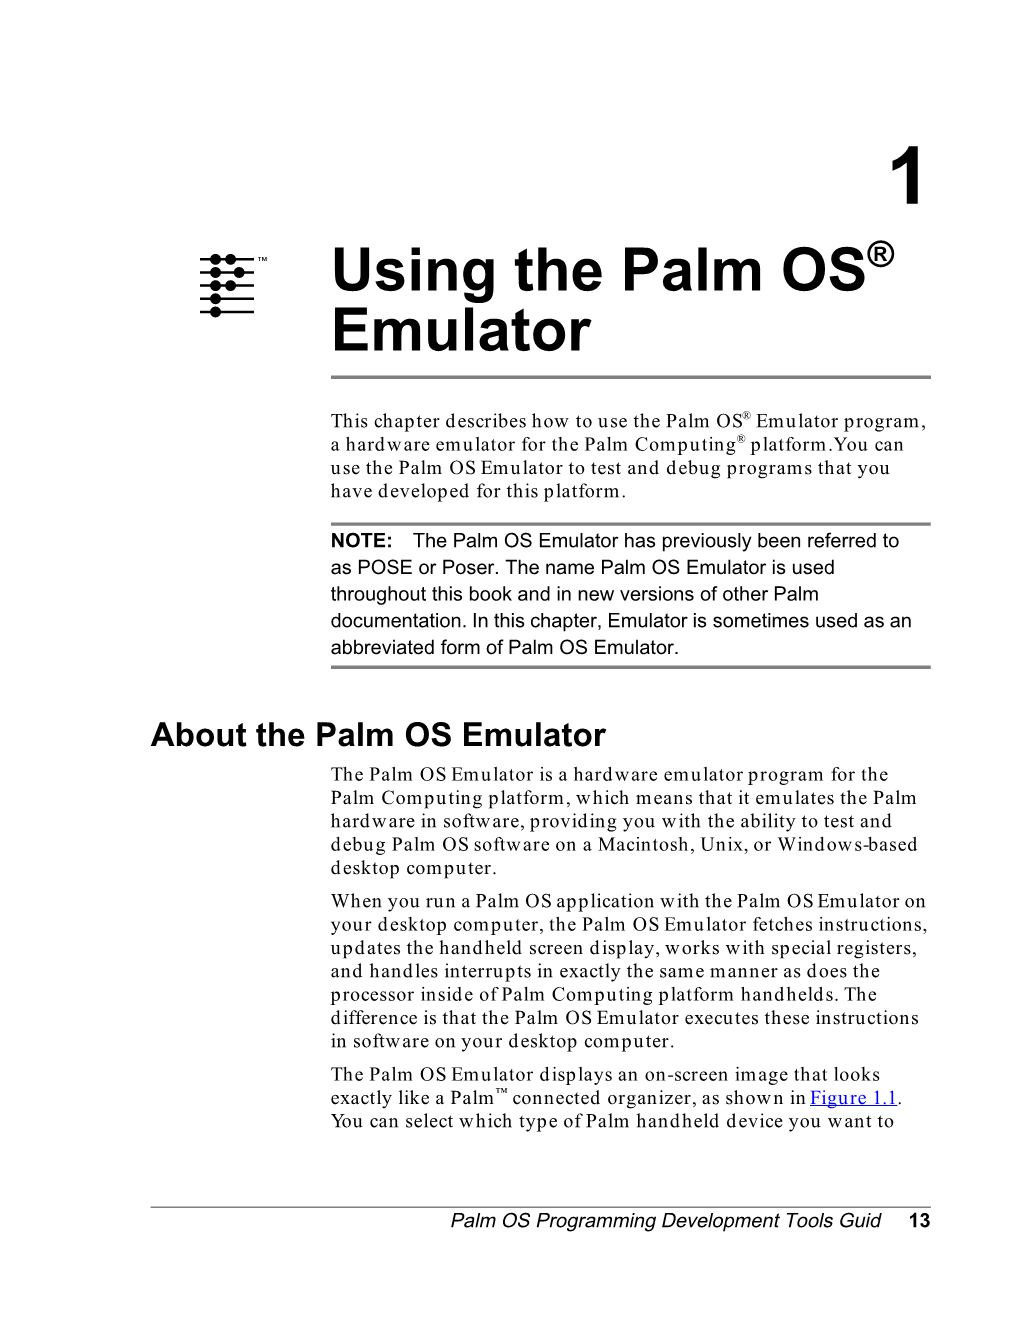 Using the Palm OS Emulator